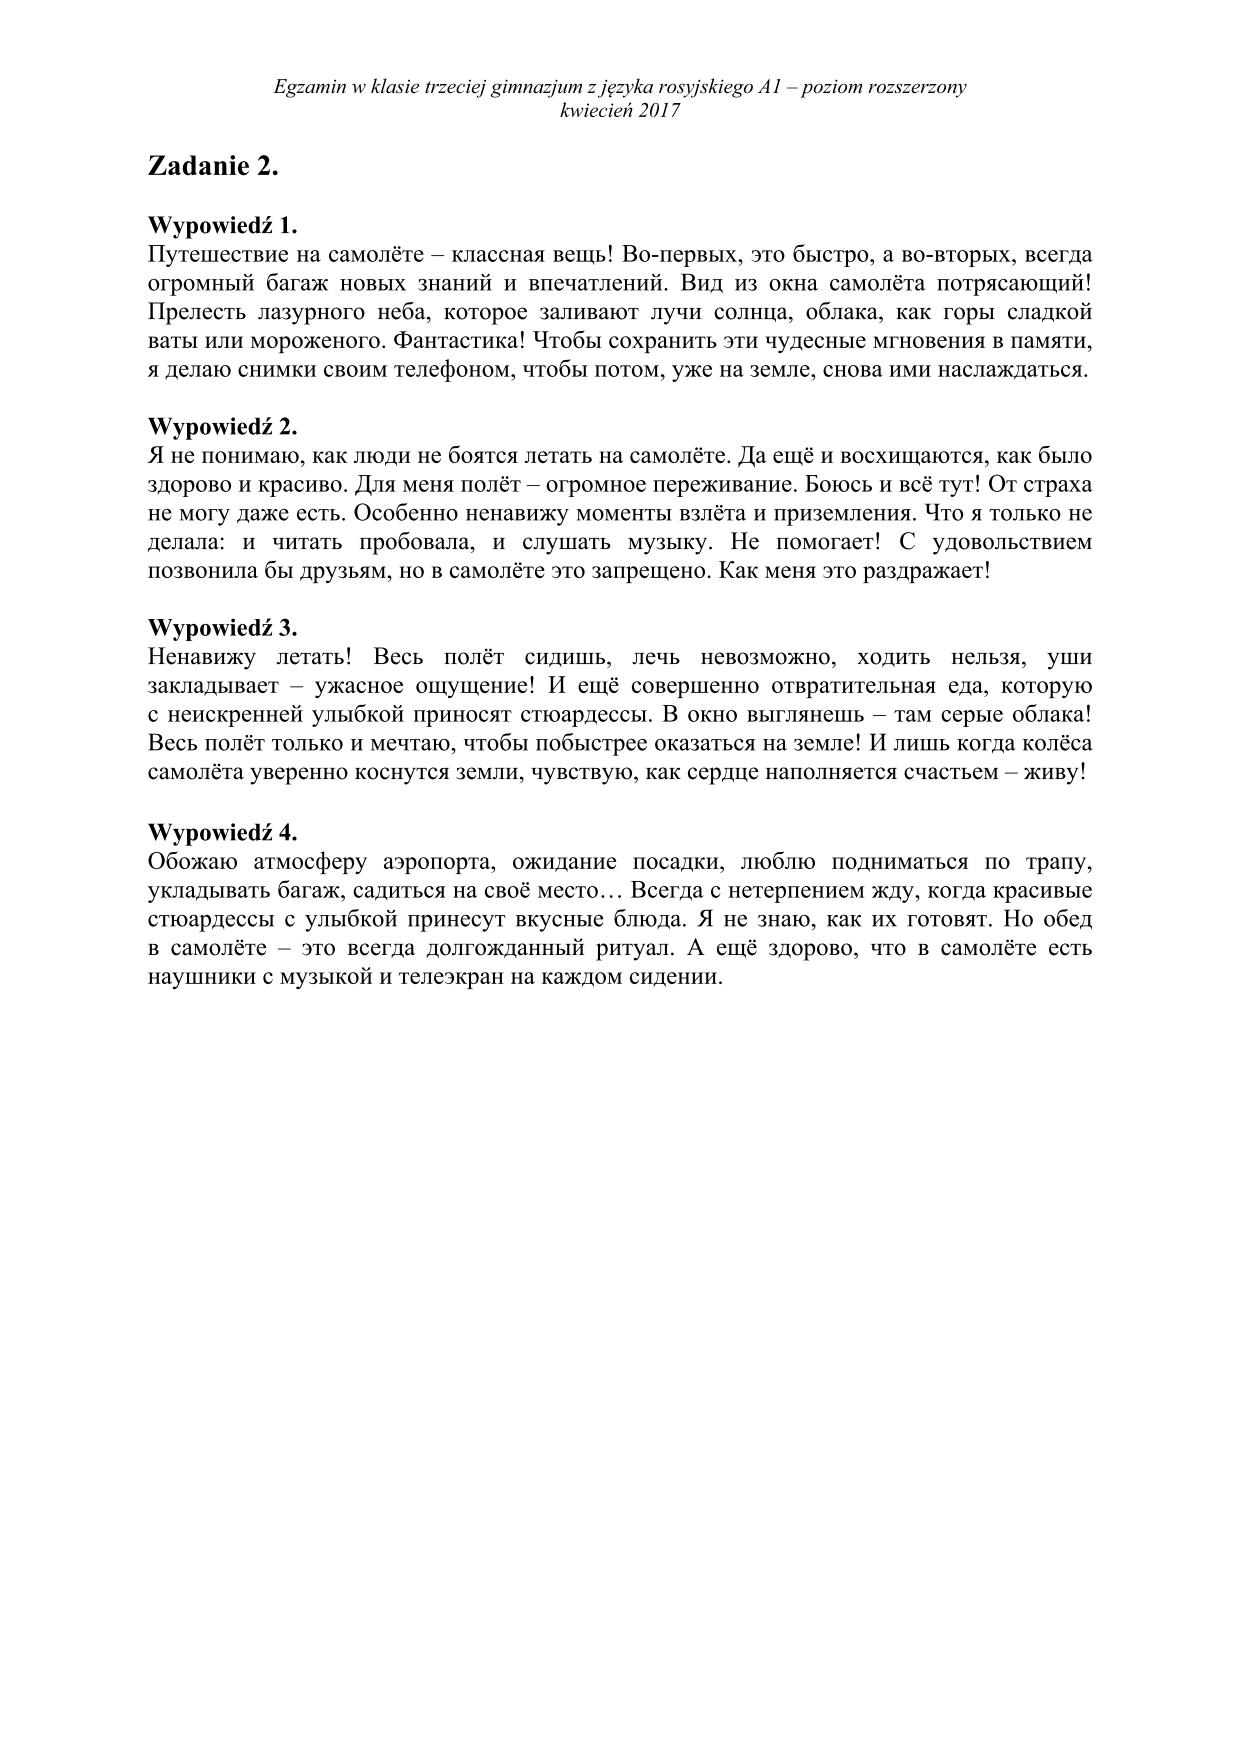 transkrypcja-rosyjski-poziom-rozszerzony-egzamin-gimnazjalny-2017 - 2